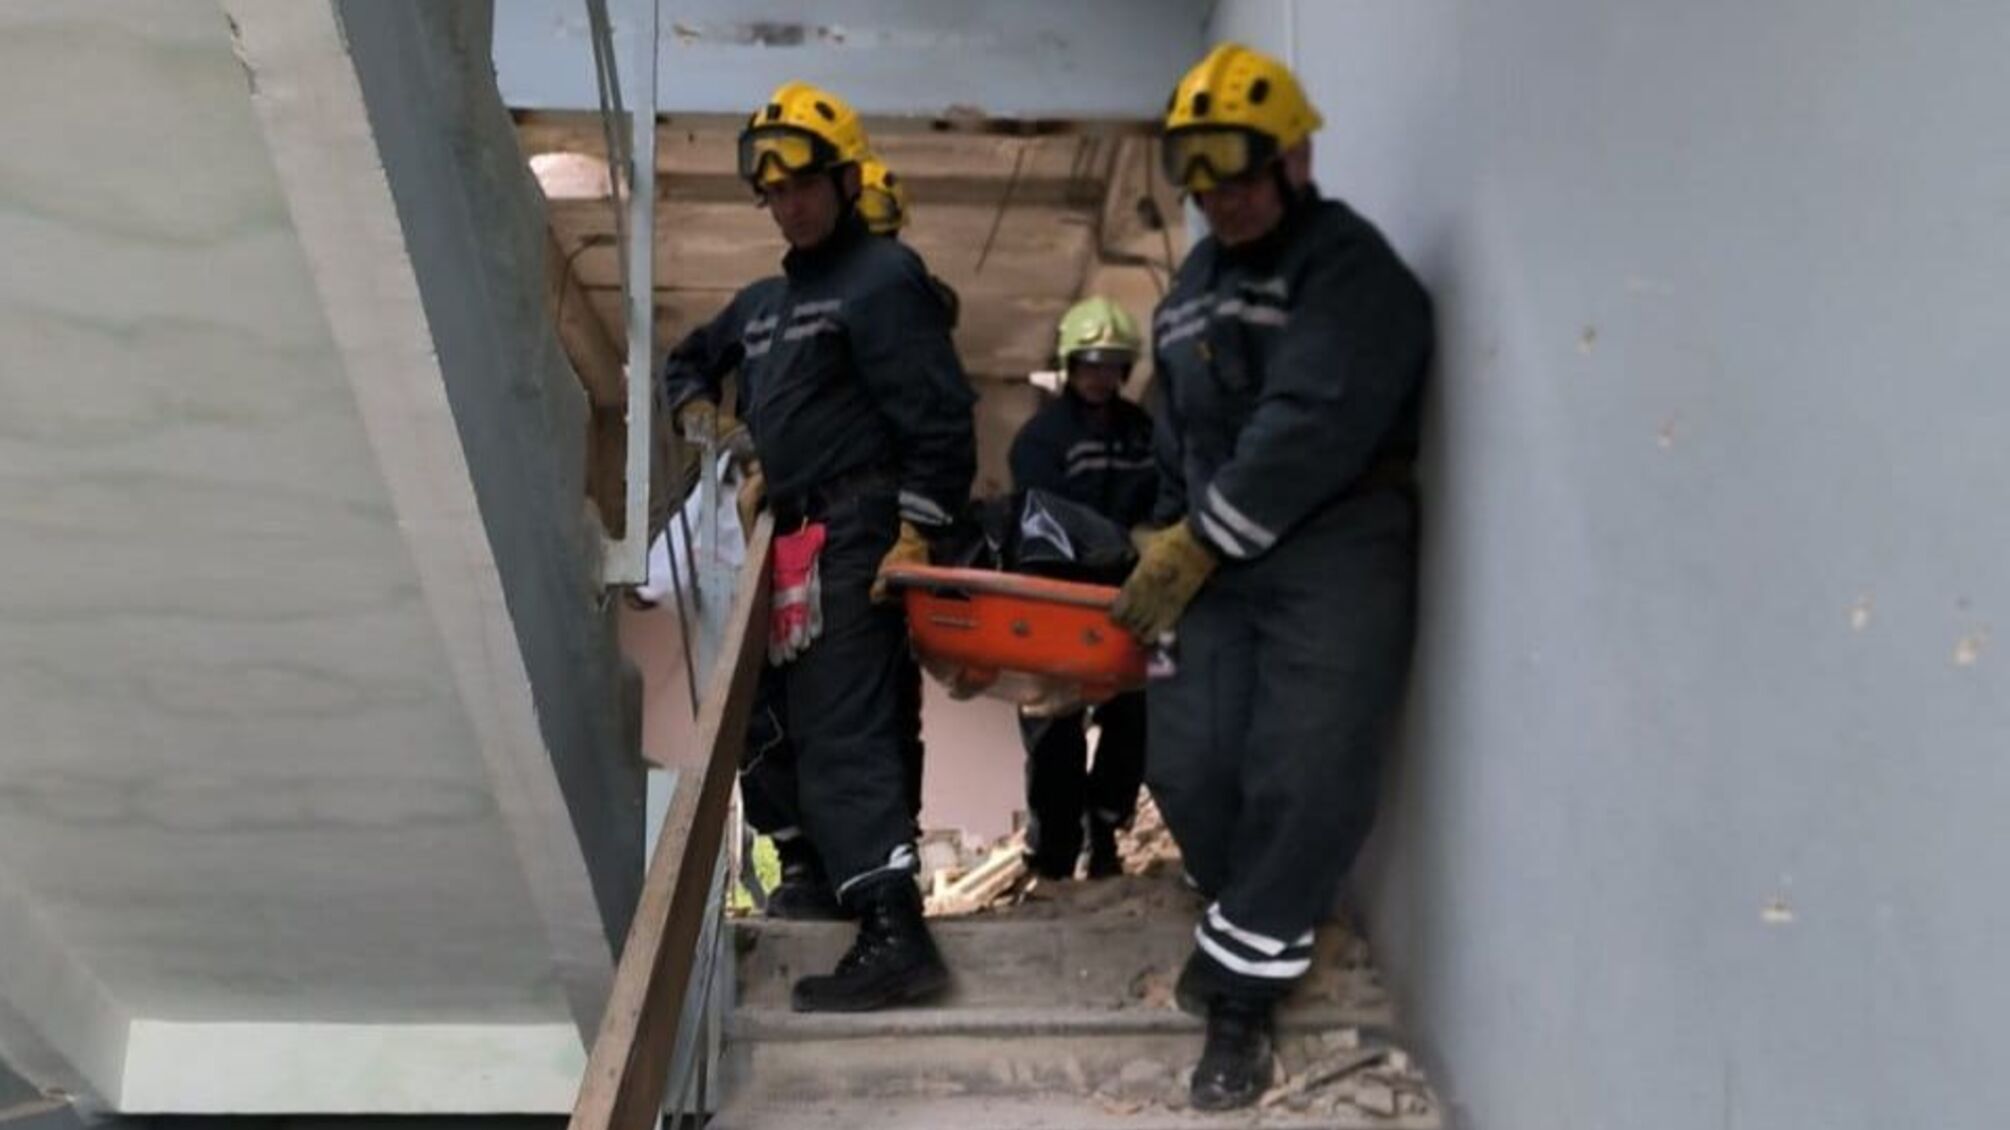 Трагедія на будівництві в Києві: бетонна плита зірвалася та придавила чоловіка на смерть